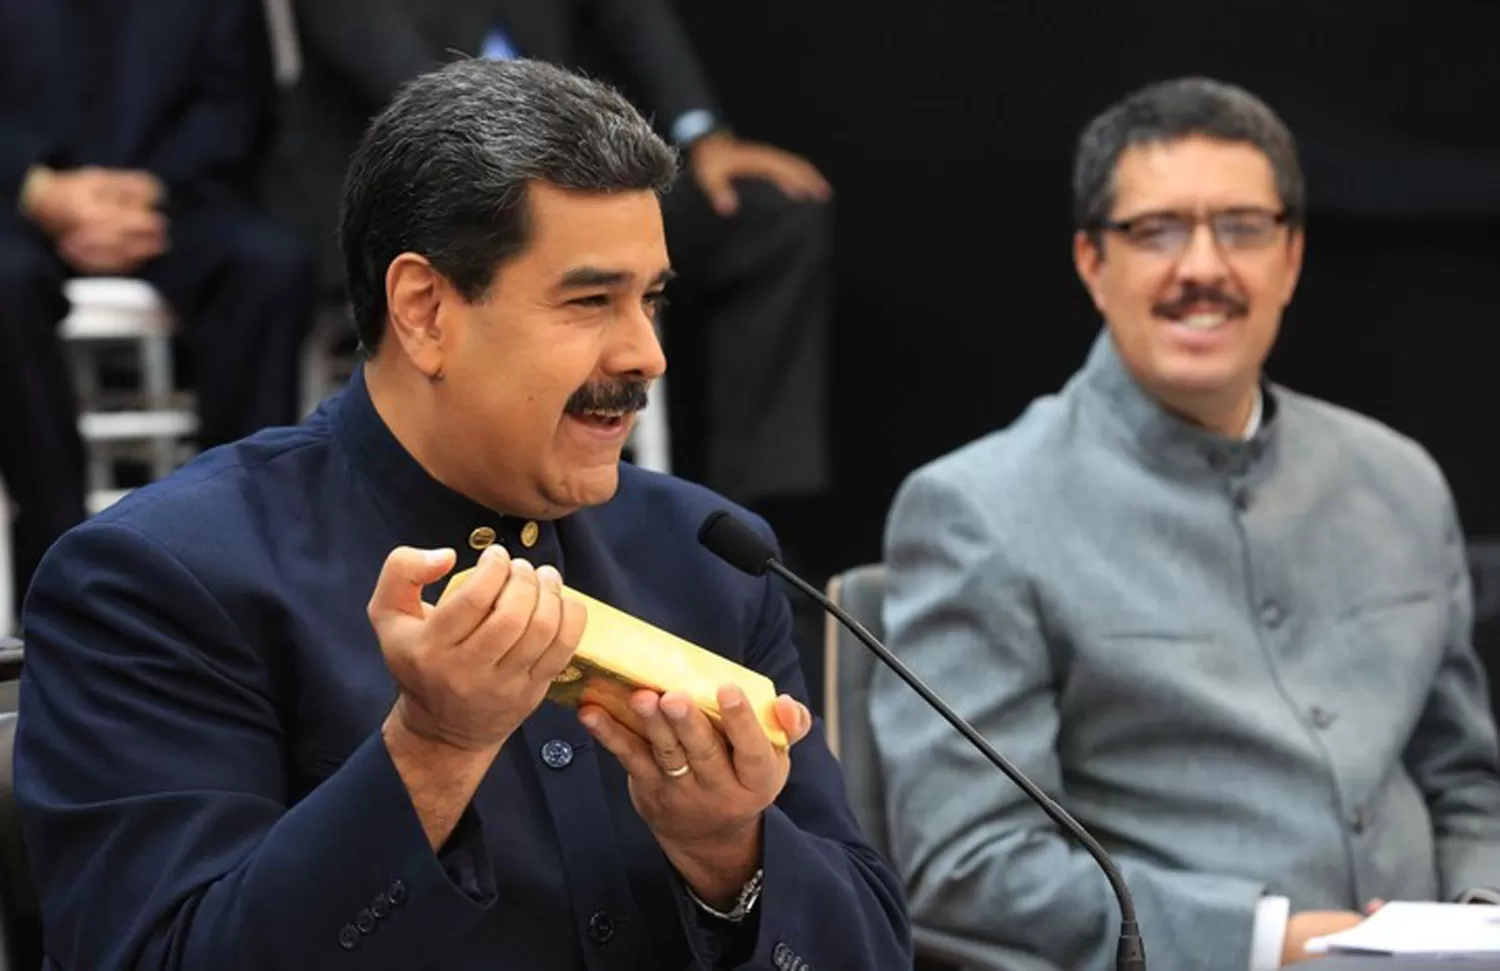 ORO. Maduro muestra un lingote en medio de la conferencia en la que anunció una drástica reconversión de la moneda venezolana. FOTO TOMADA DE CLARIN

